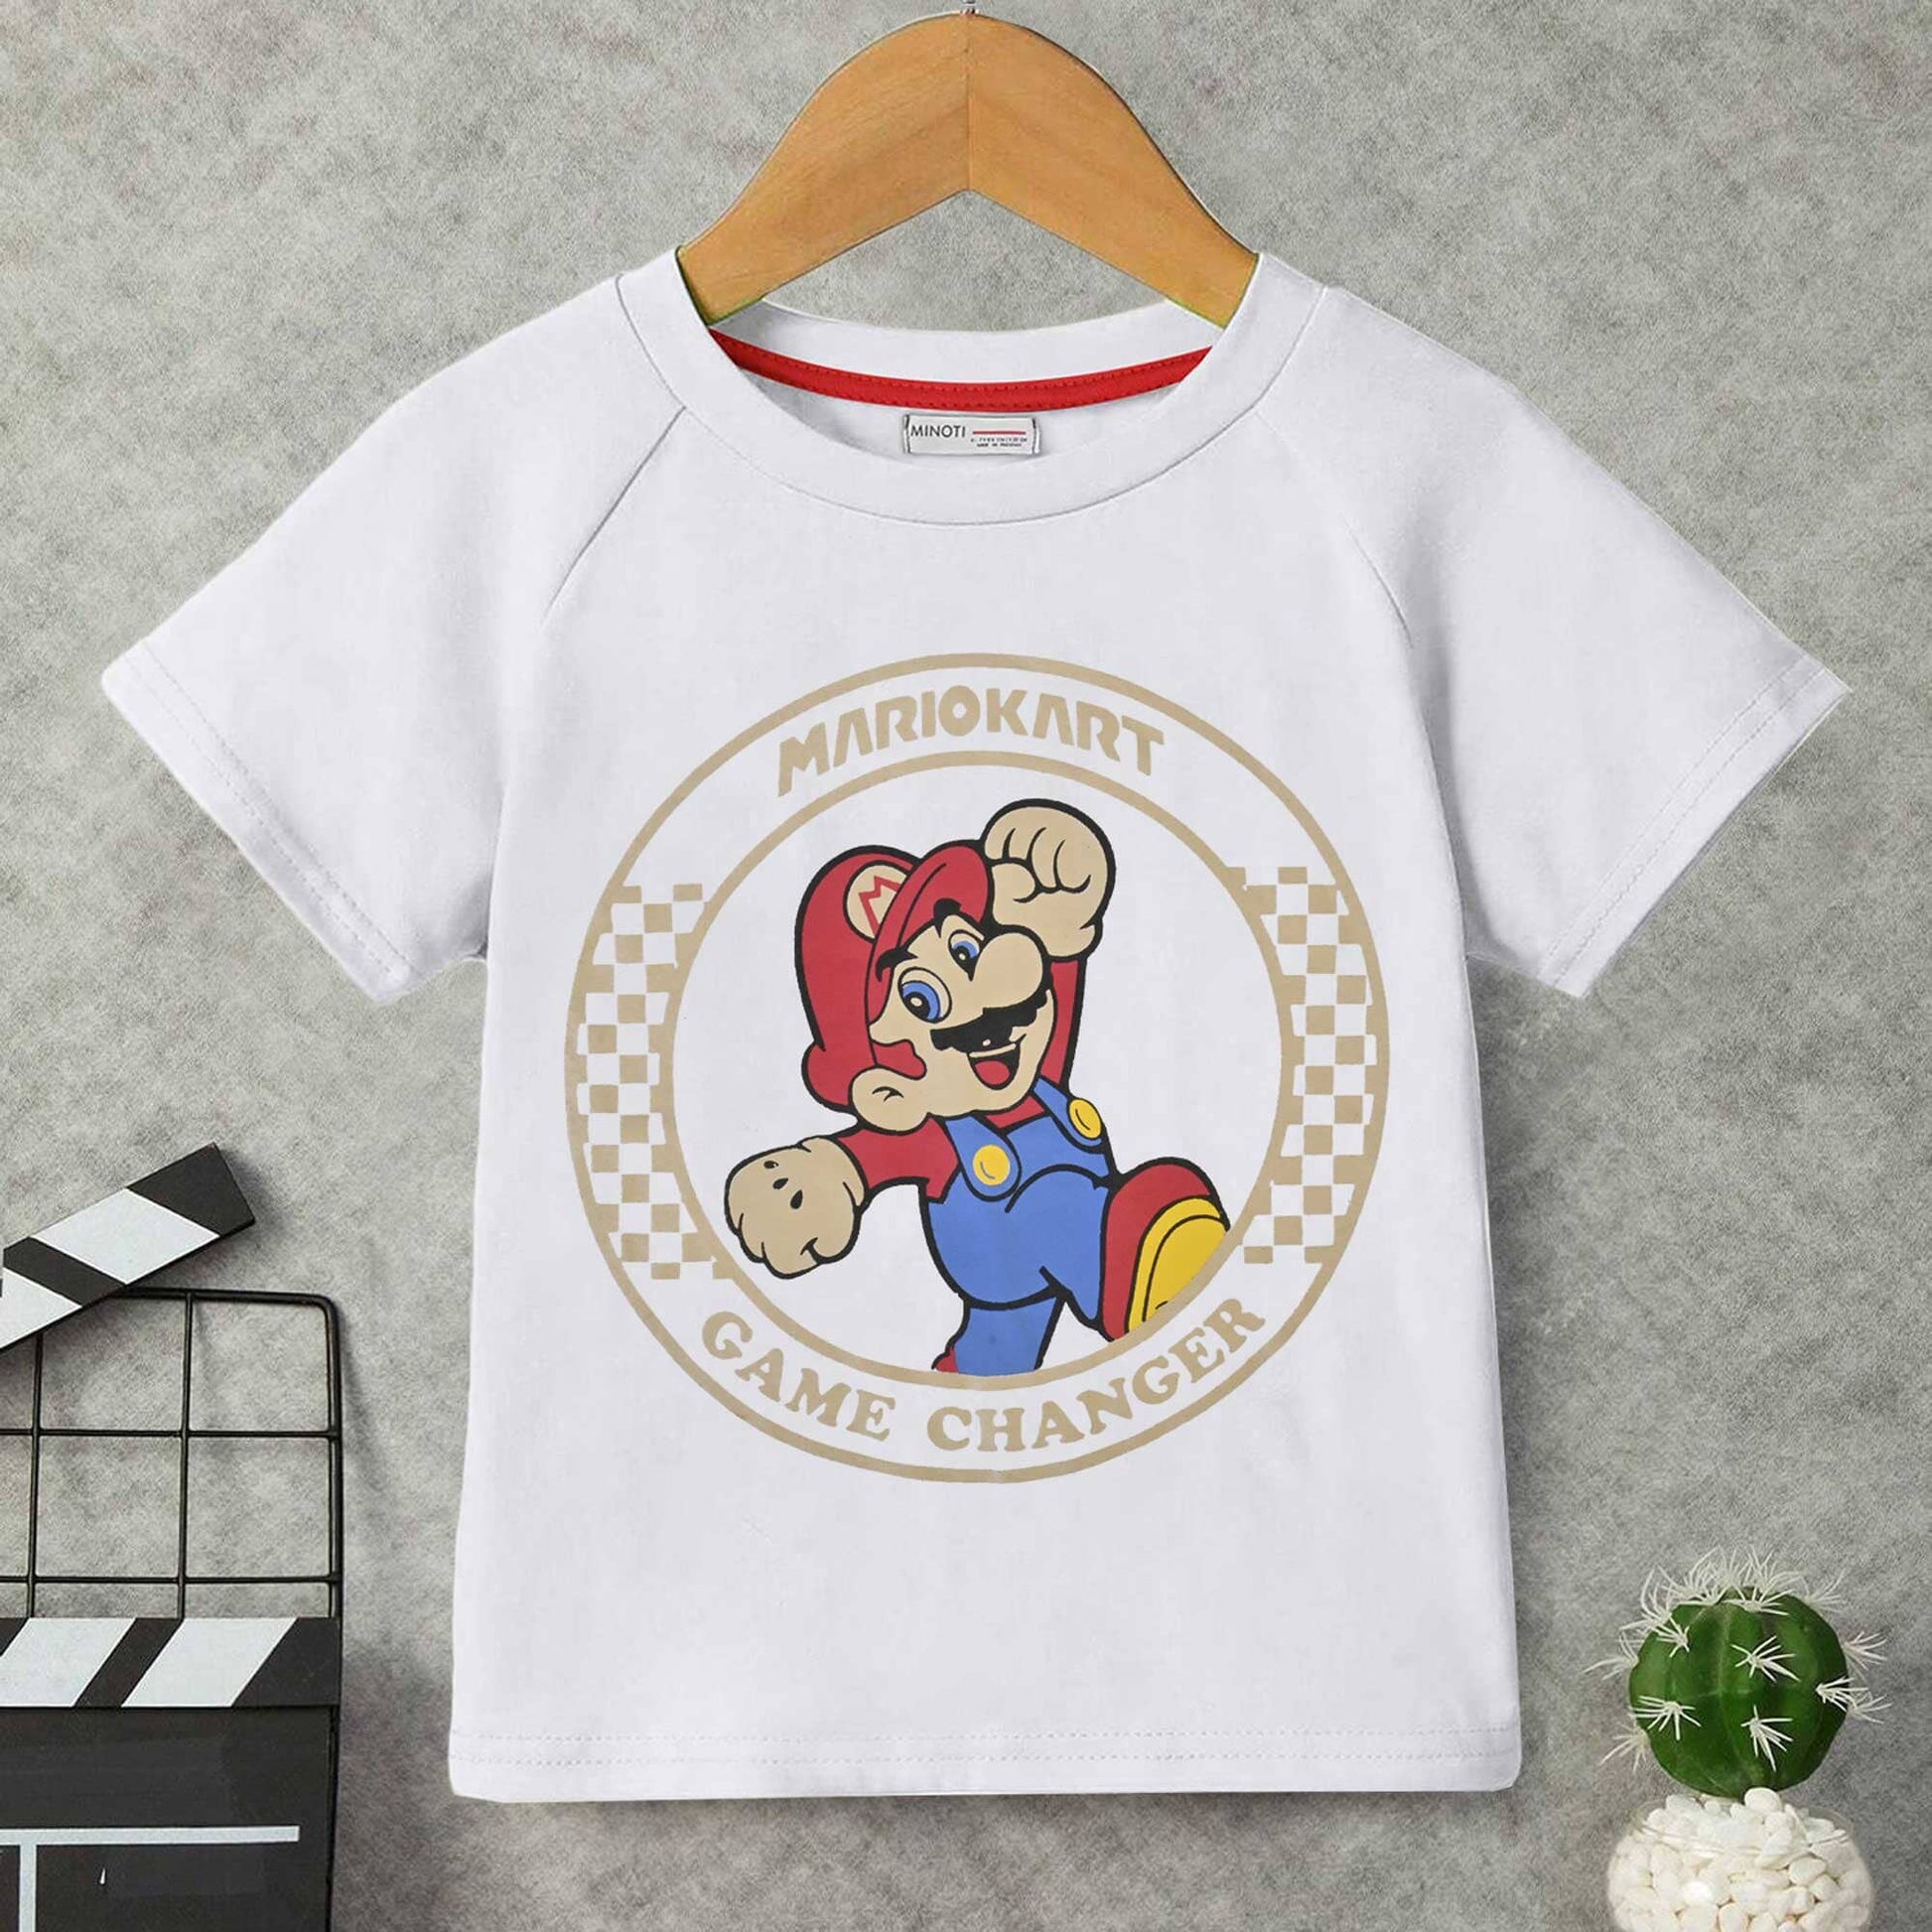 Minoti Kid's Mariokart Printed Tee Shirt Boy's Tee Shirt SZK White 3-4 Years 